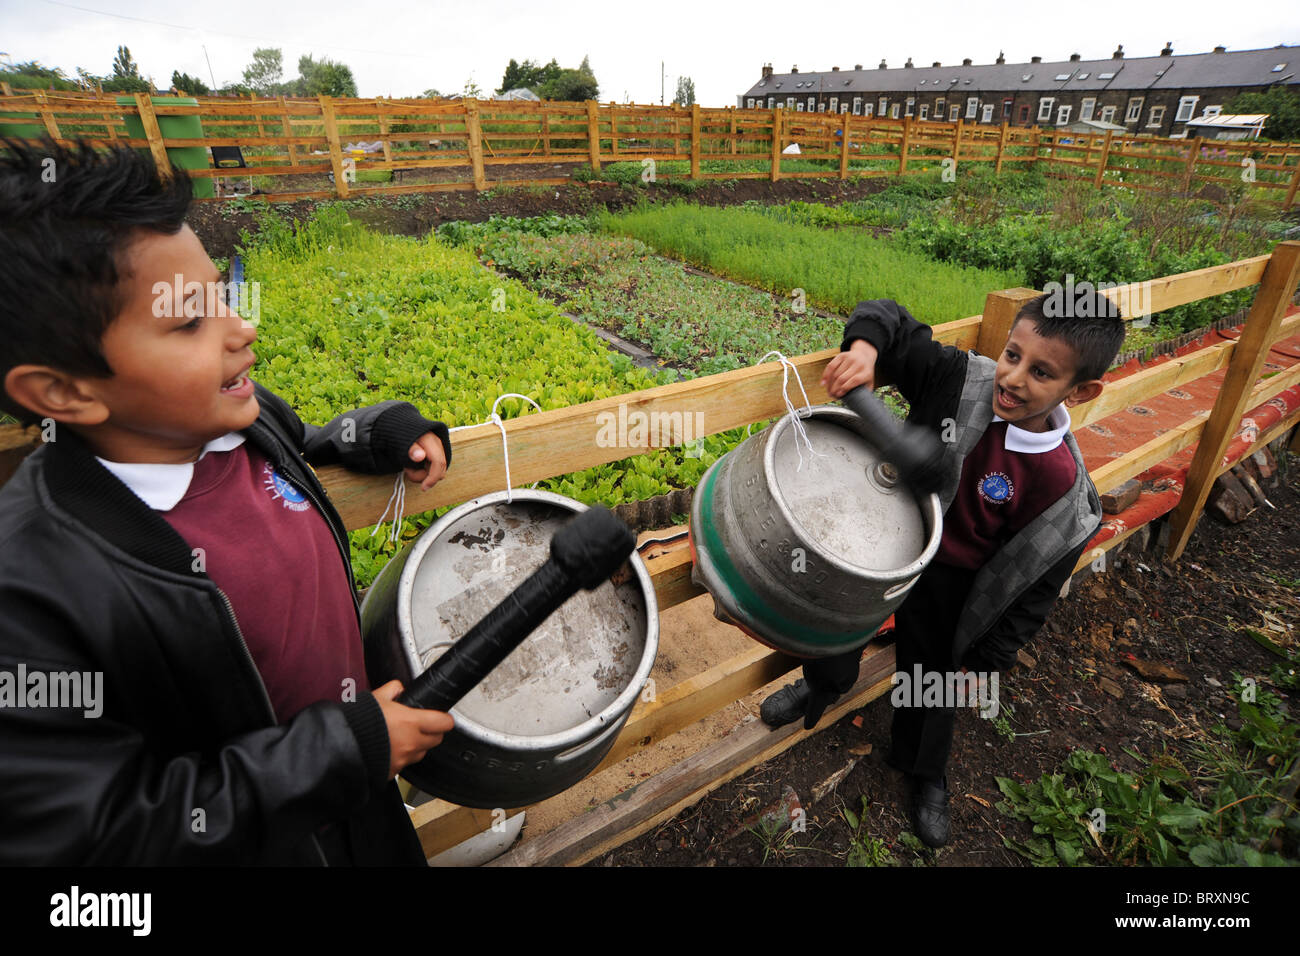 Kinder spielen Trommeln aus alte Bierfässer während einem Besuch in lokalen Kleingärten, Bradford, West Yorkshire Stockfoto